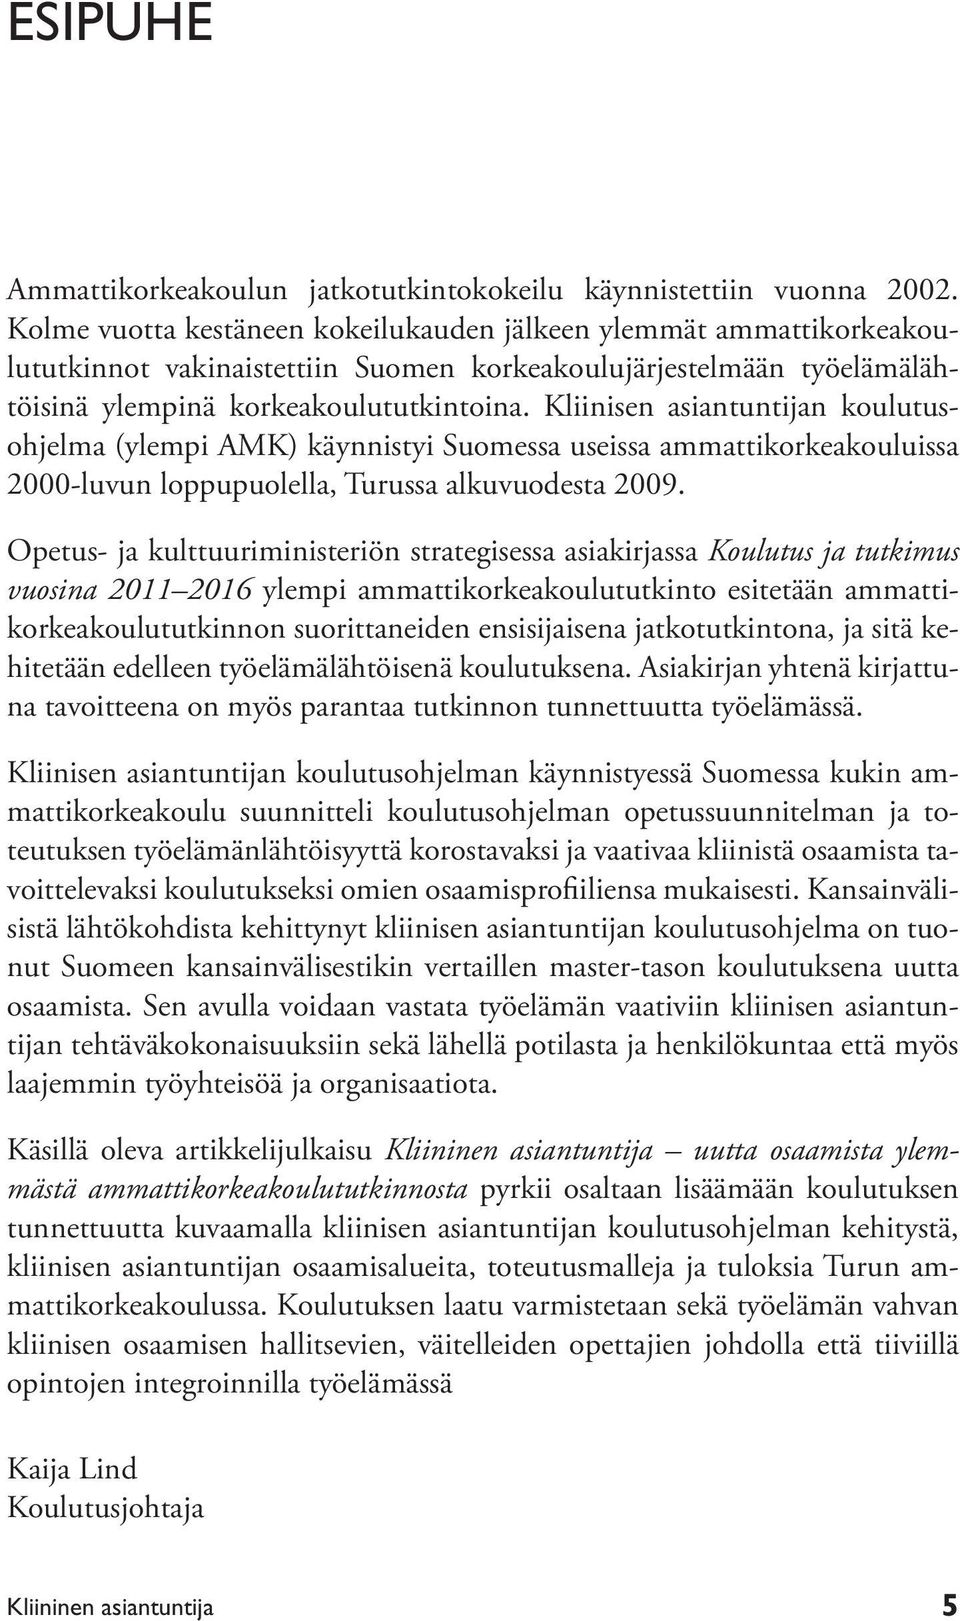 Kliinisen asiantuntijan koulutusohjelma (ylempi AMK) käynnistyi Suomessa useissa ammattikorkeakouluissa 2000-luvun loppupuolella, Turussa alkuvuodesta 2009.